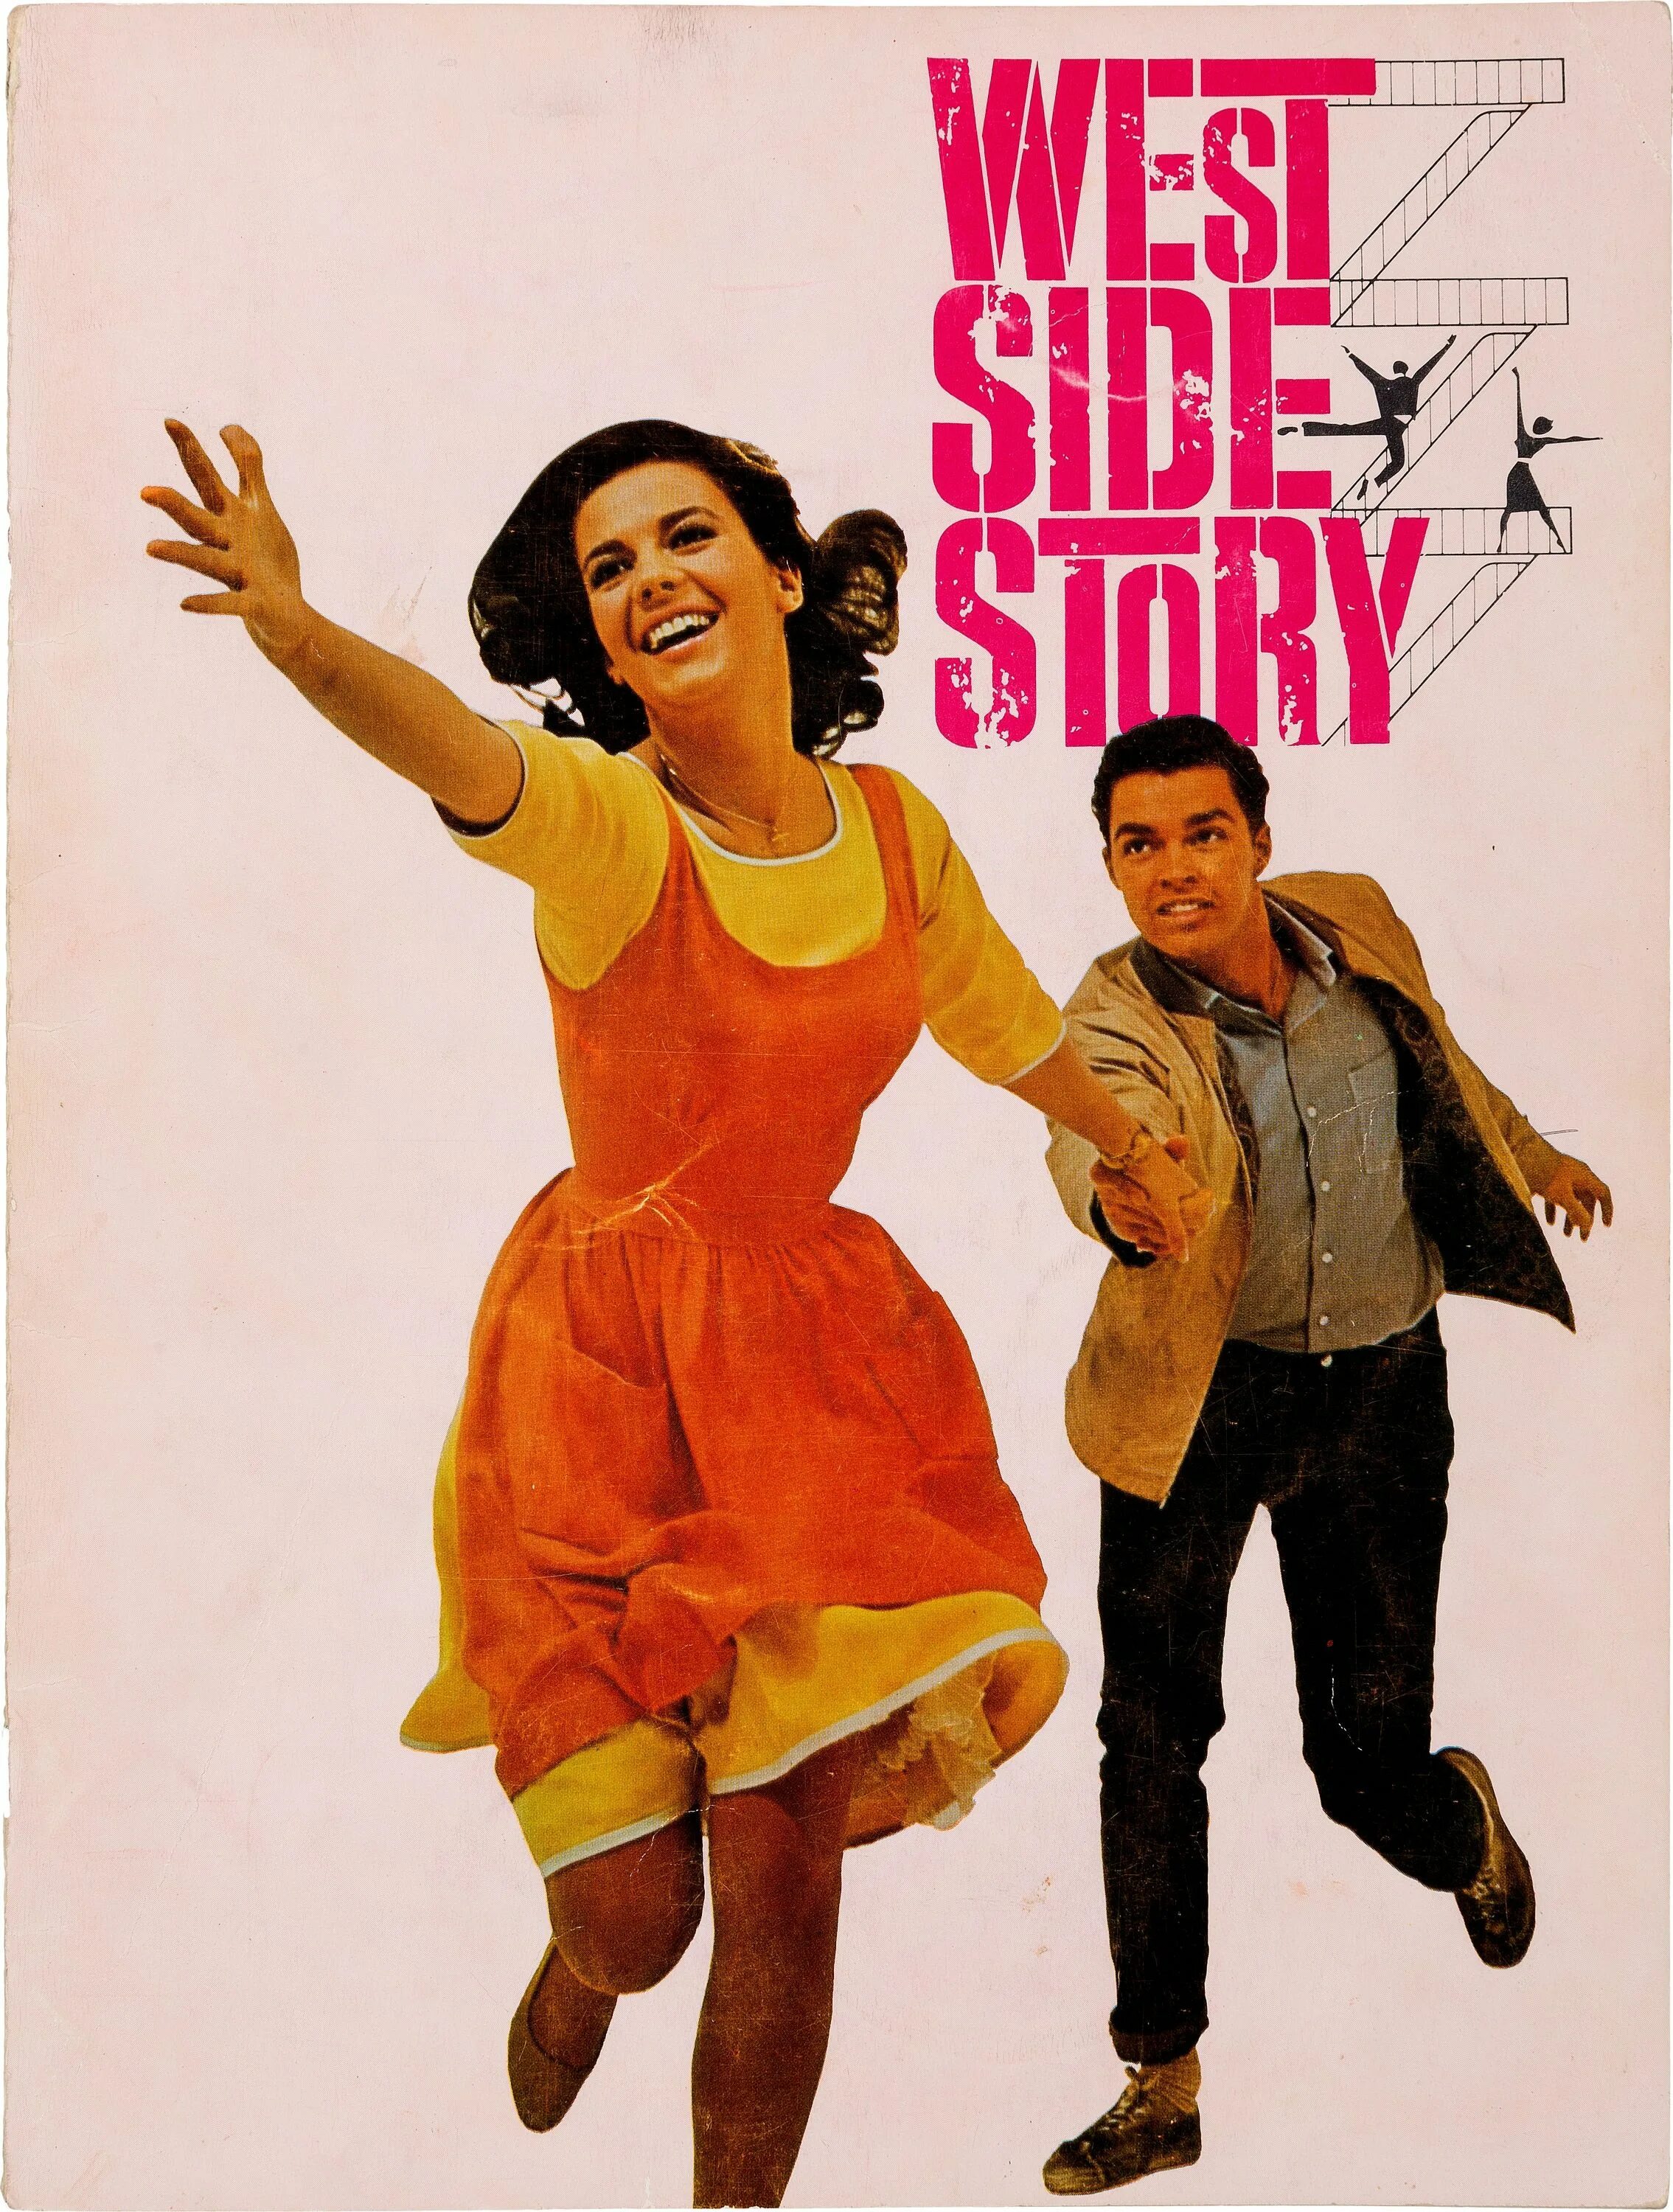 Вестсайдская история / West Side story (1961). West Side story, 1961 Постер. Вестсайдская история 1961 Постер. W stories